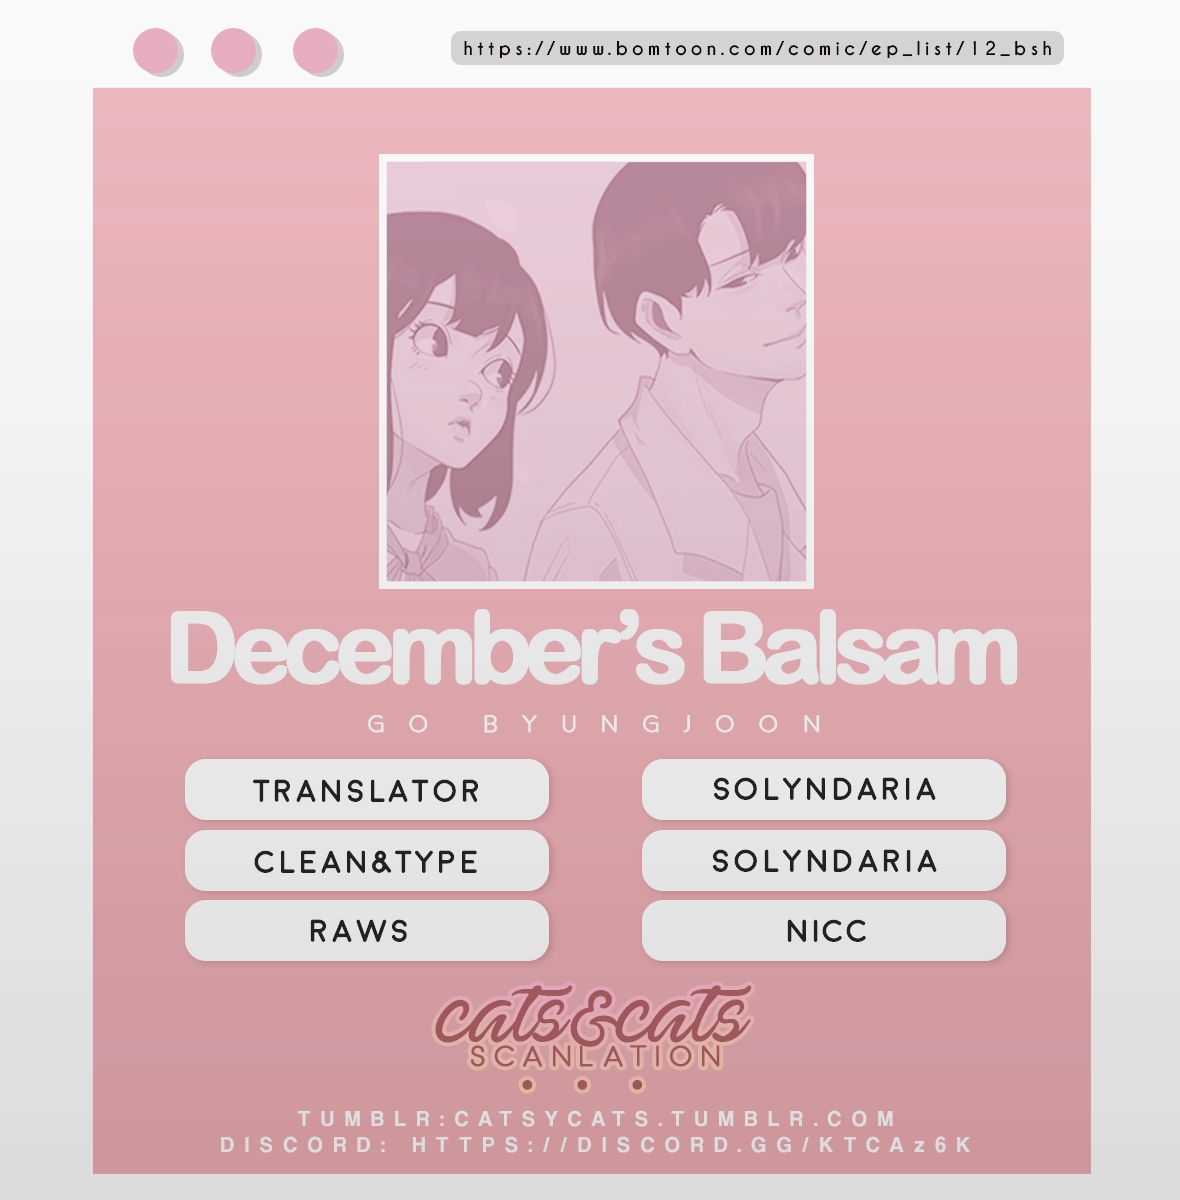 December's Balsam Ch. 1 December's Balsam